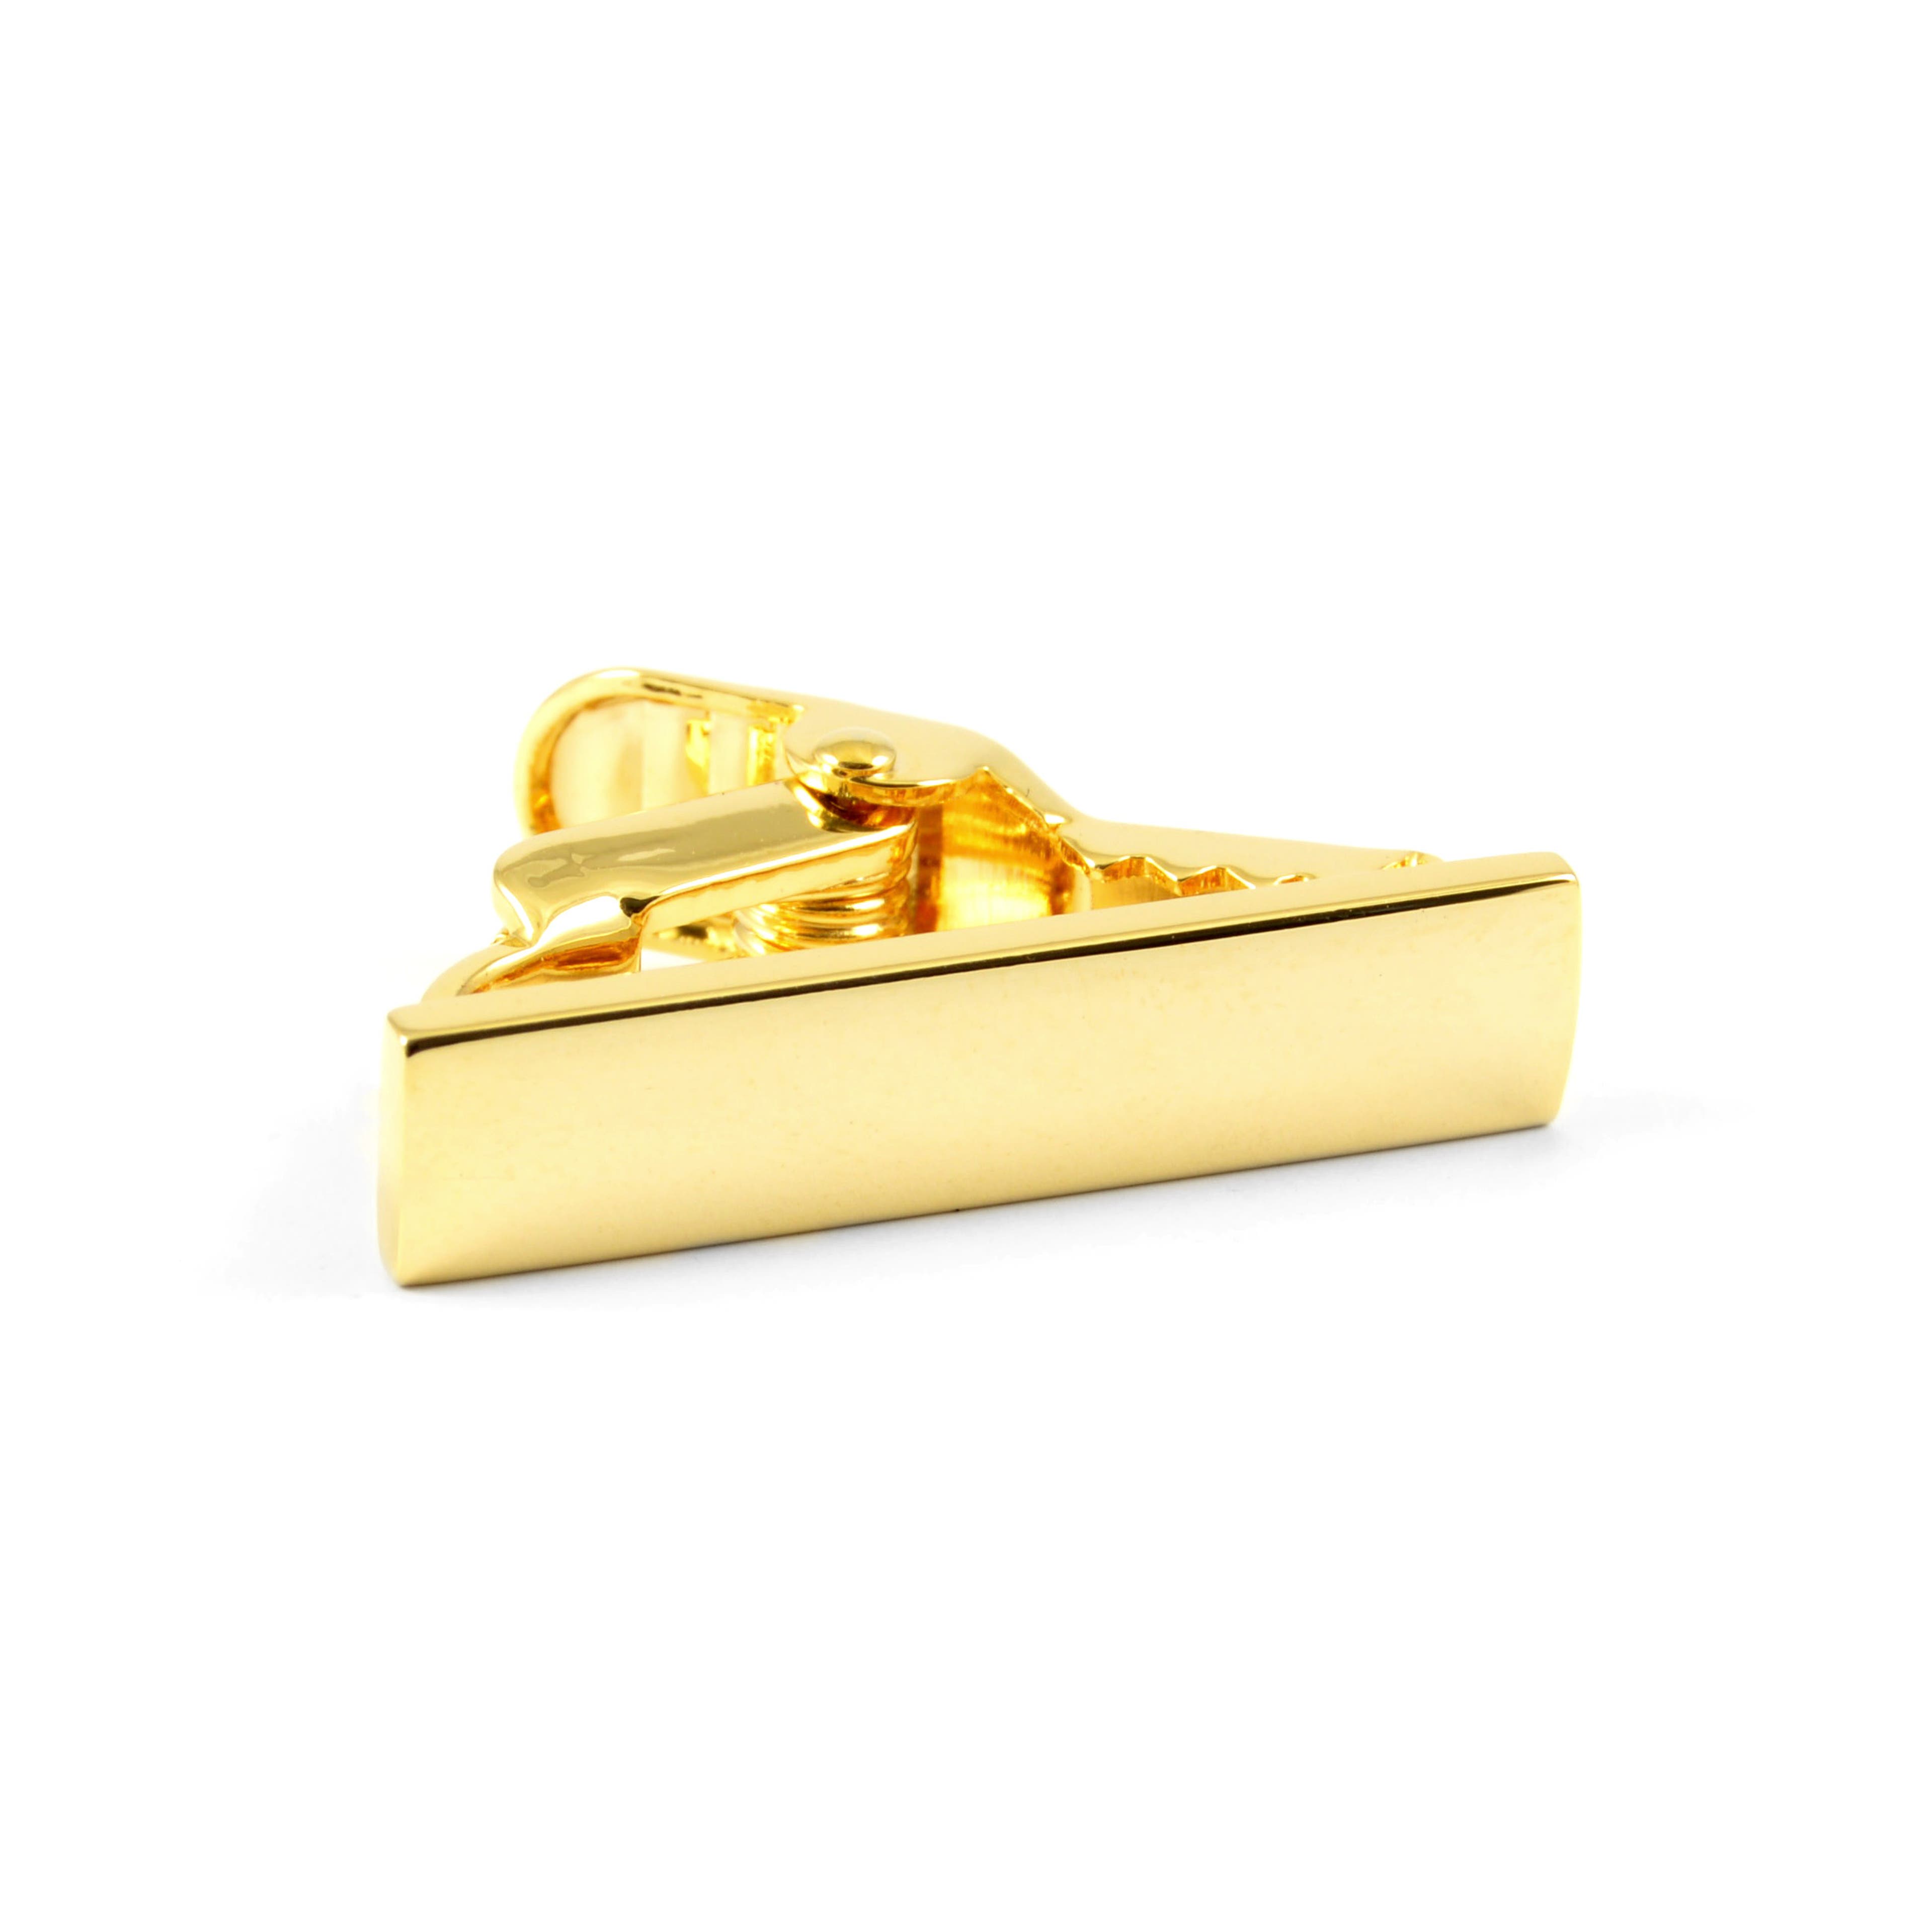 Miniaturowa złota spinka do krawata